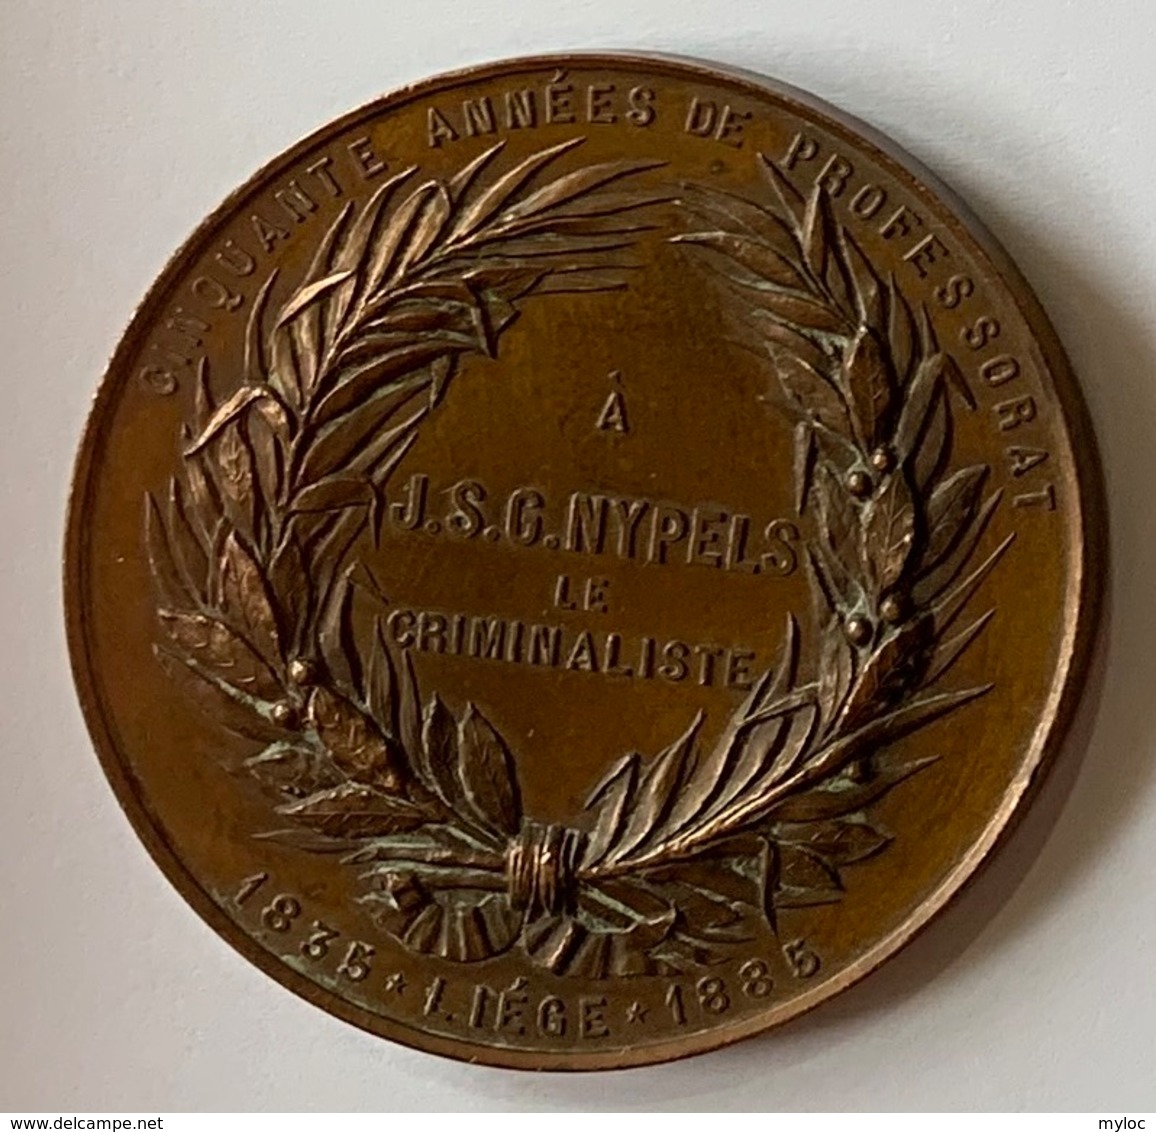 Médaille Bronze. Professeur J.S.G. Nypels. Criminalliste. Cinquante Années De Professorat. Liège 1835-1885. E. Geerts. - Professionnels / De Société